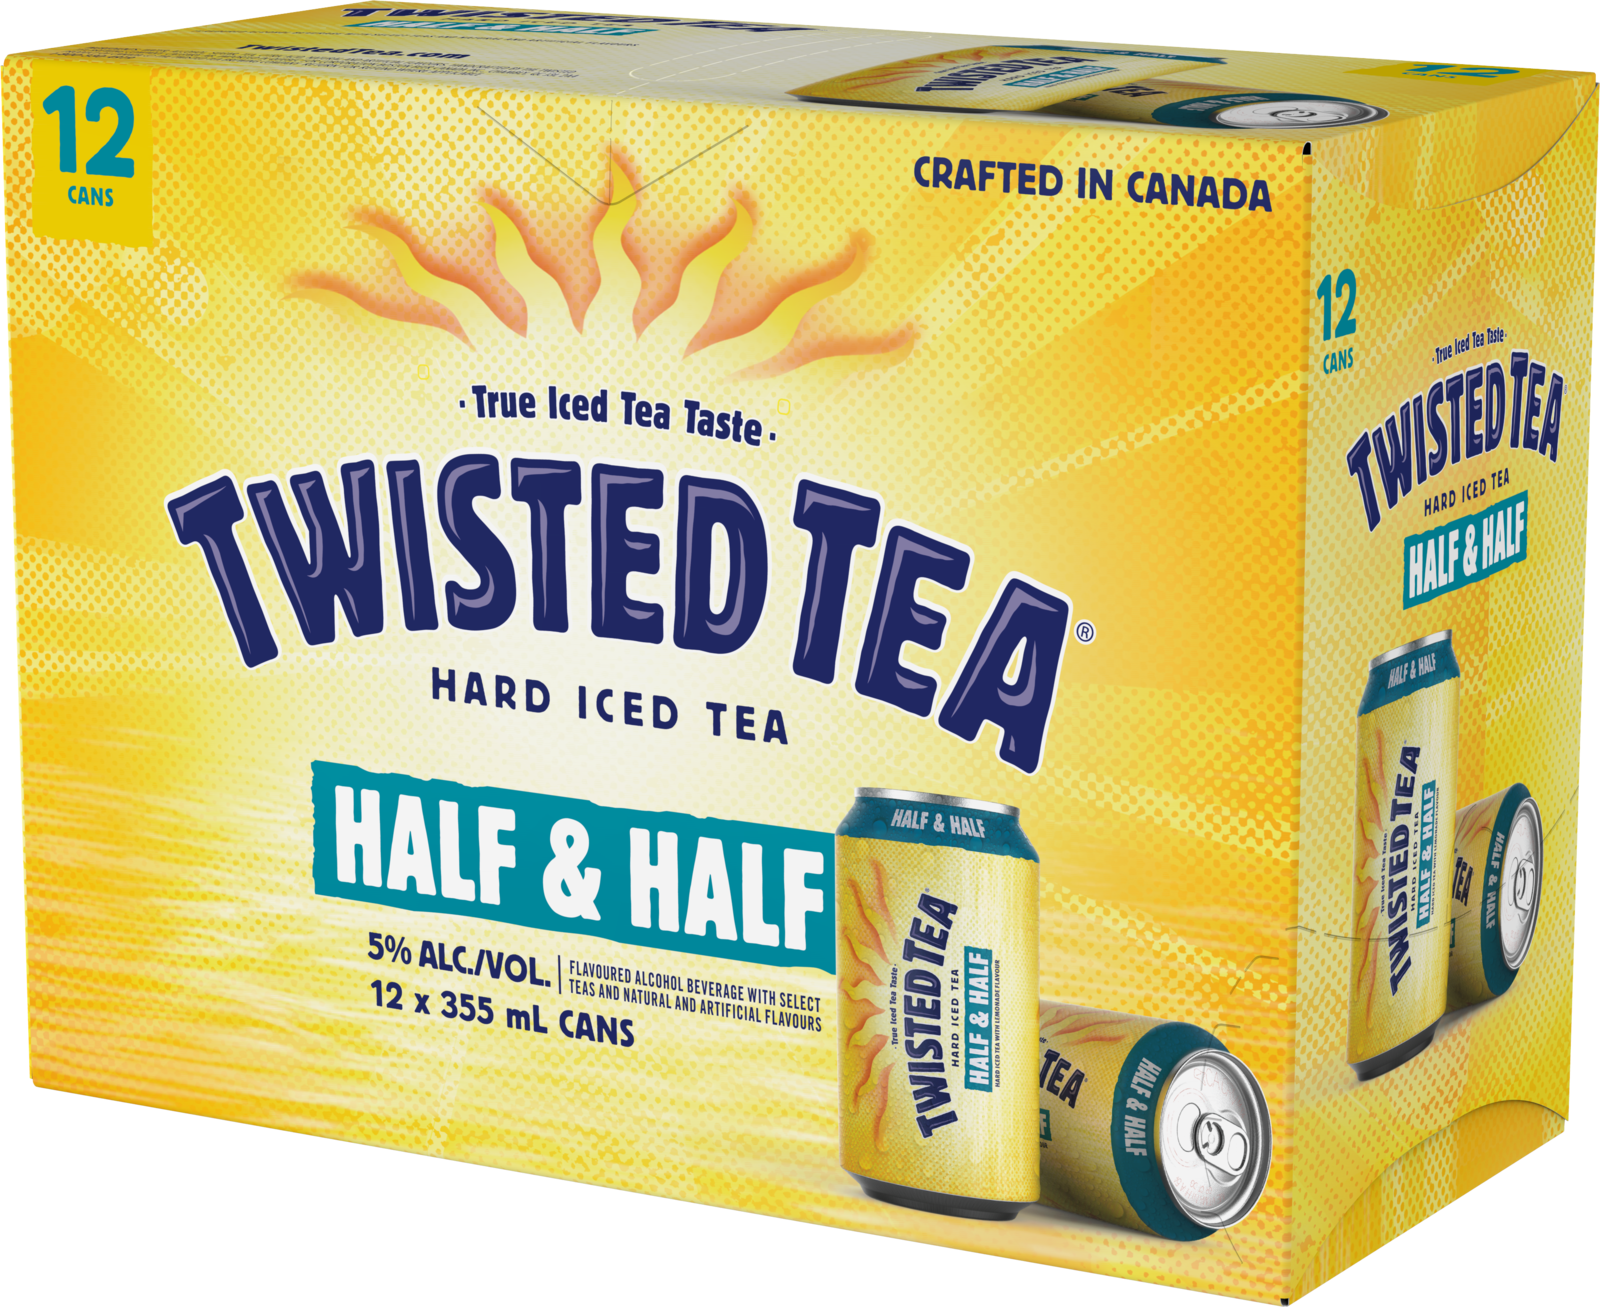 Twisted Tea Half & Half Hard Iced Tea Liquor Depot; Edmonton